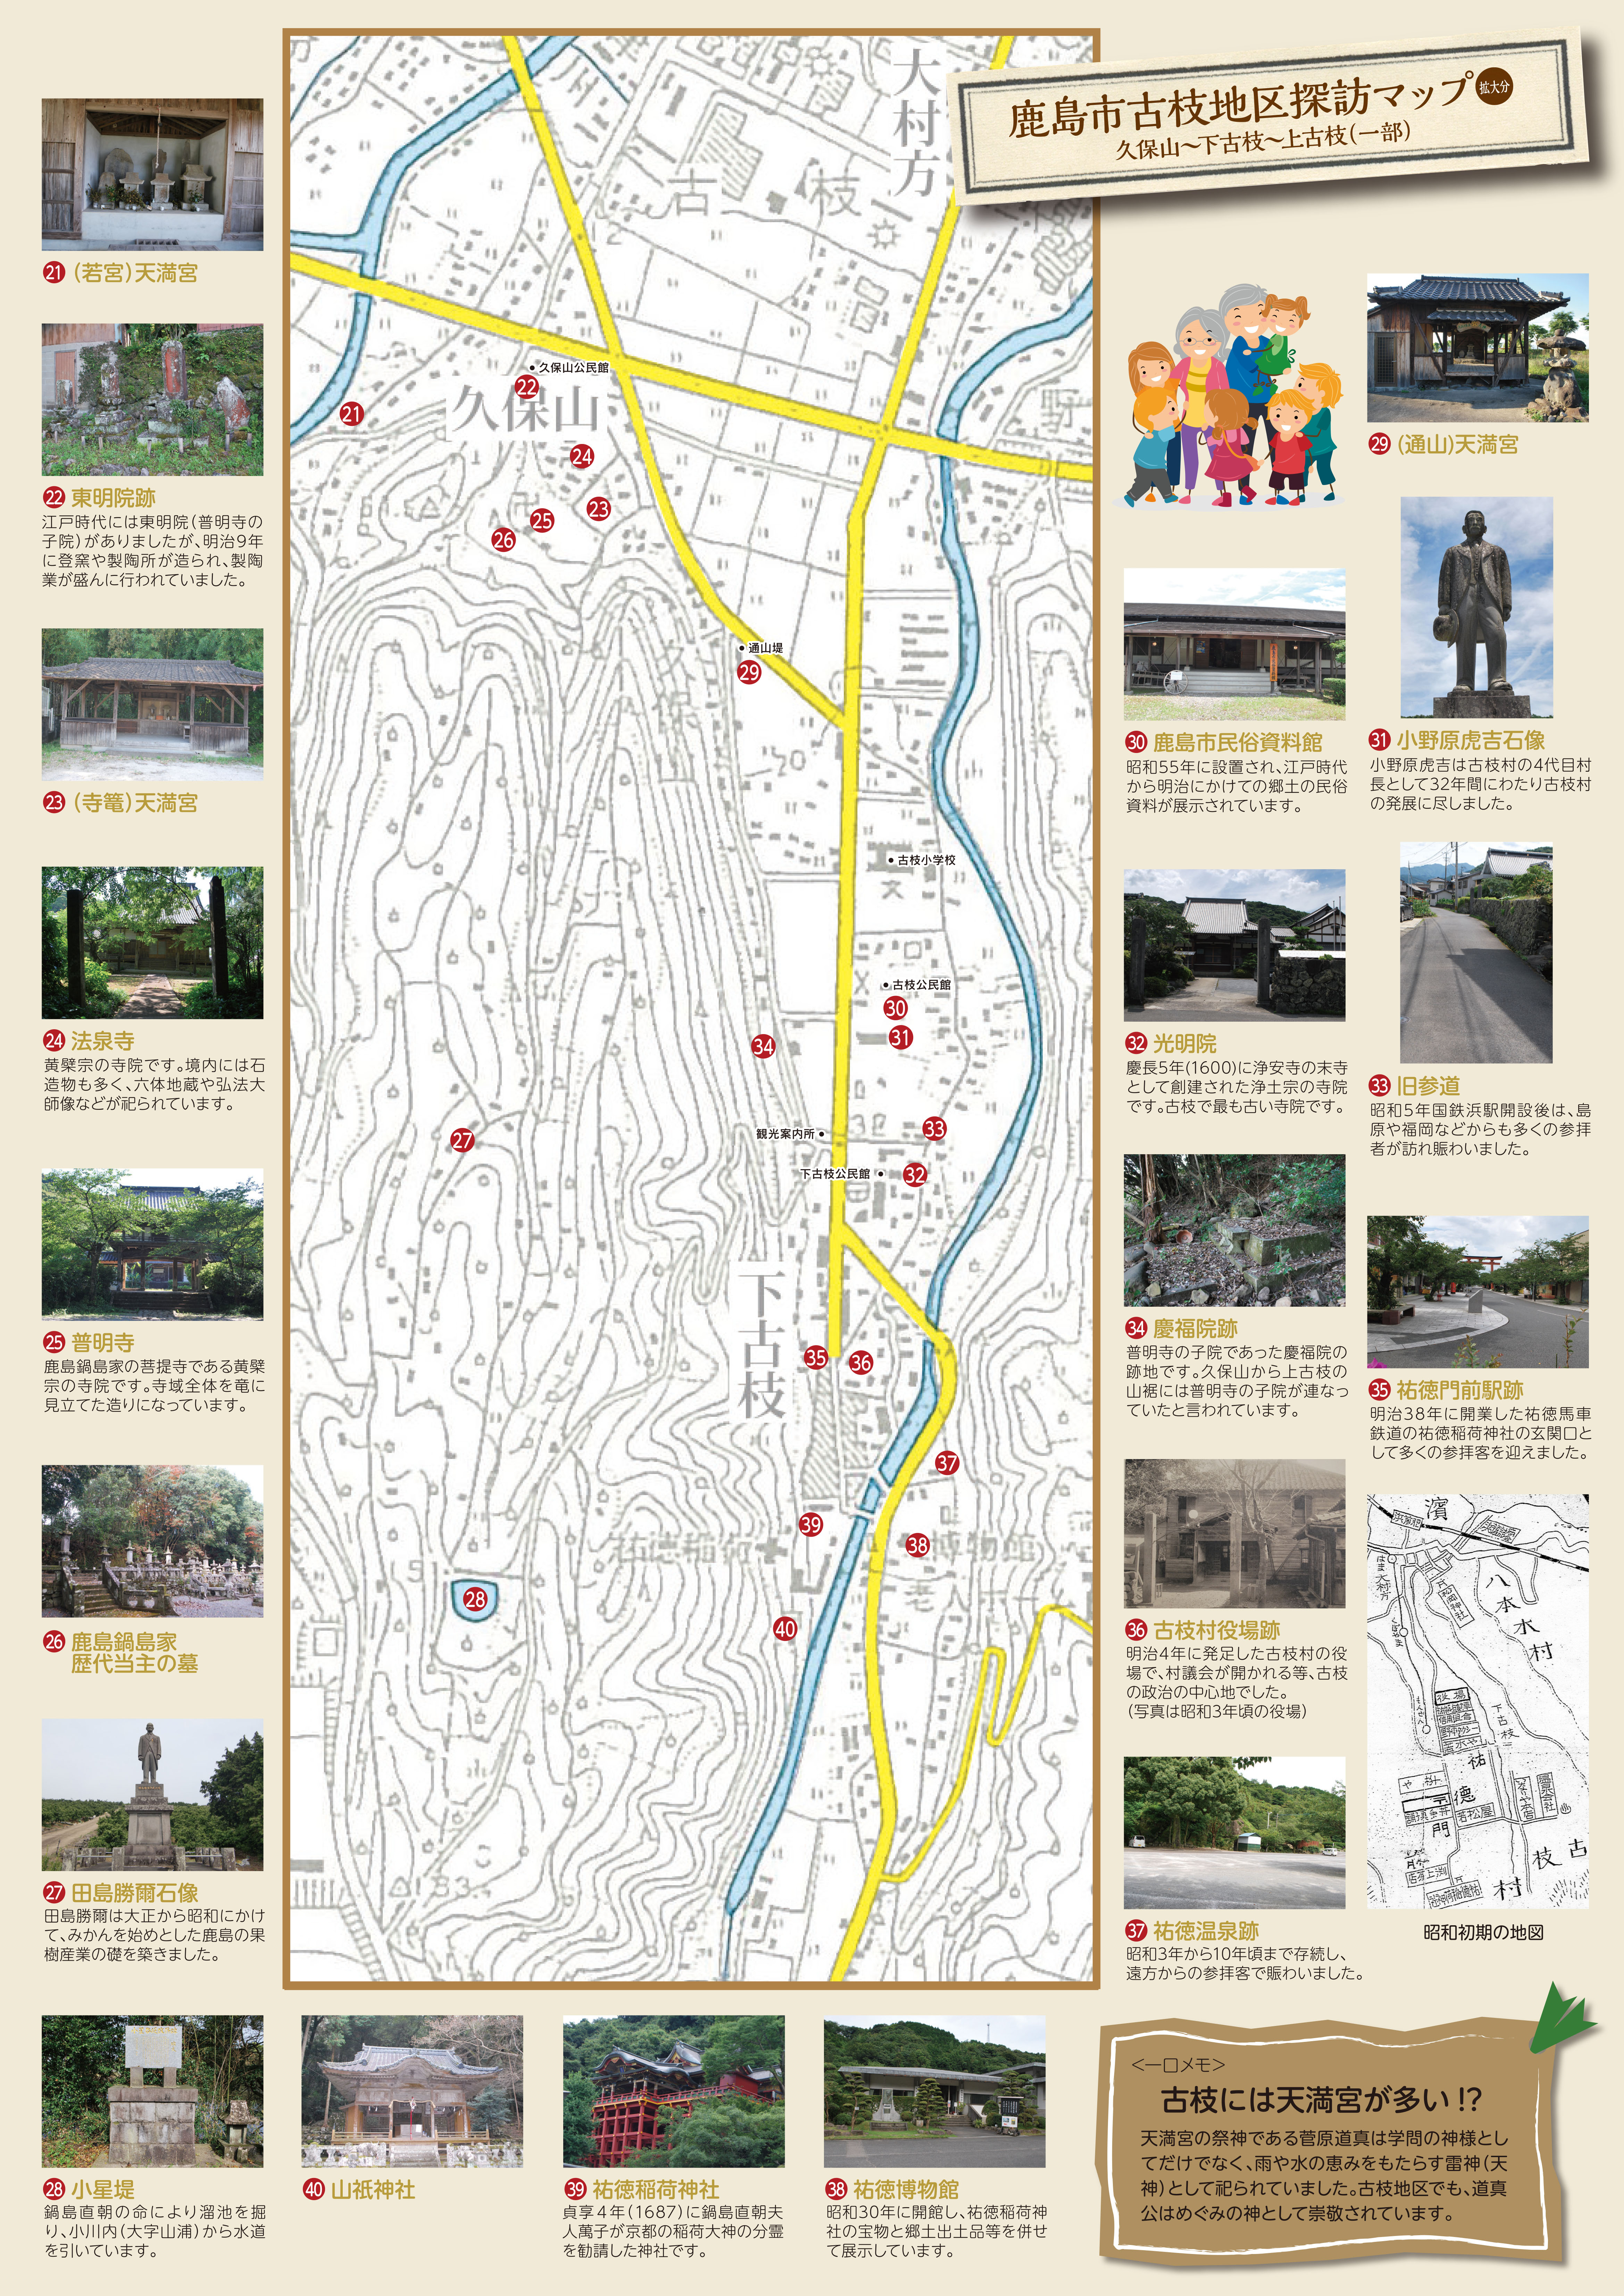 鹿島市 古枝地区 探訪マップ 裏 拡大図